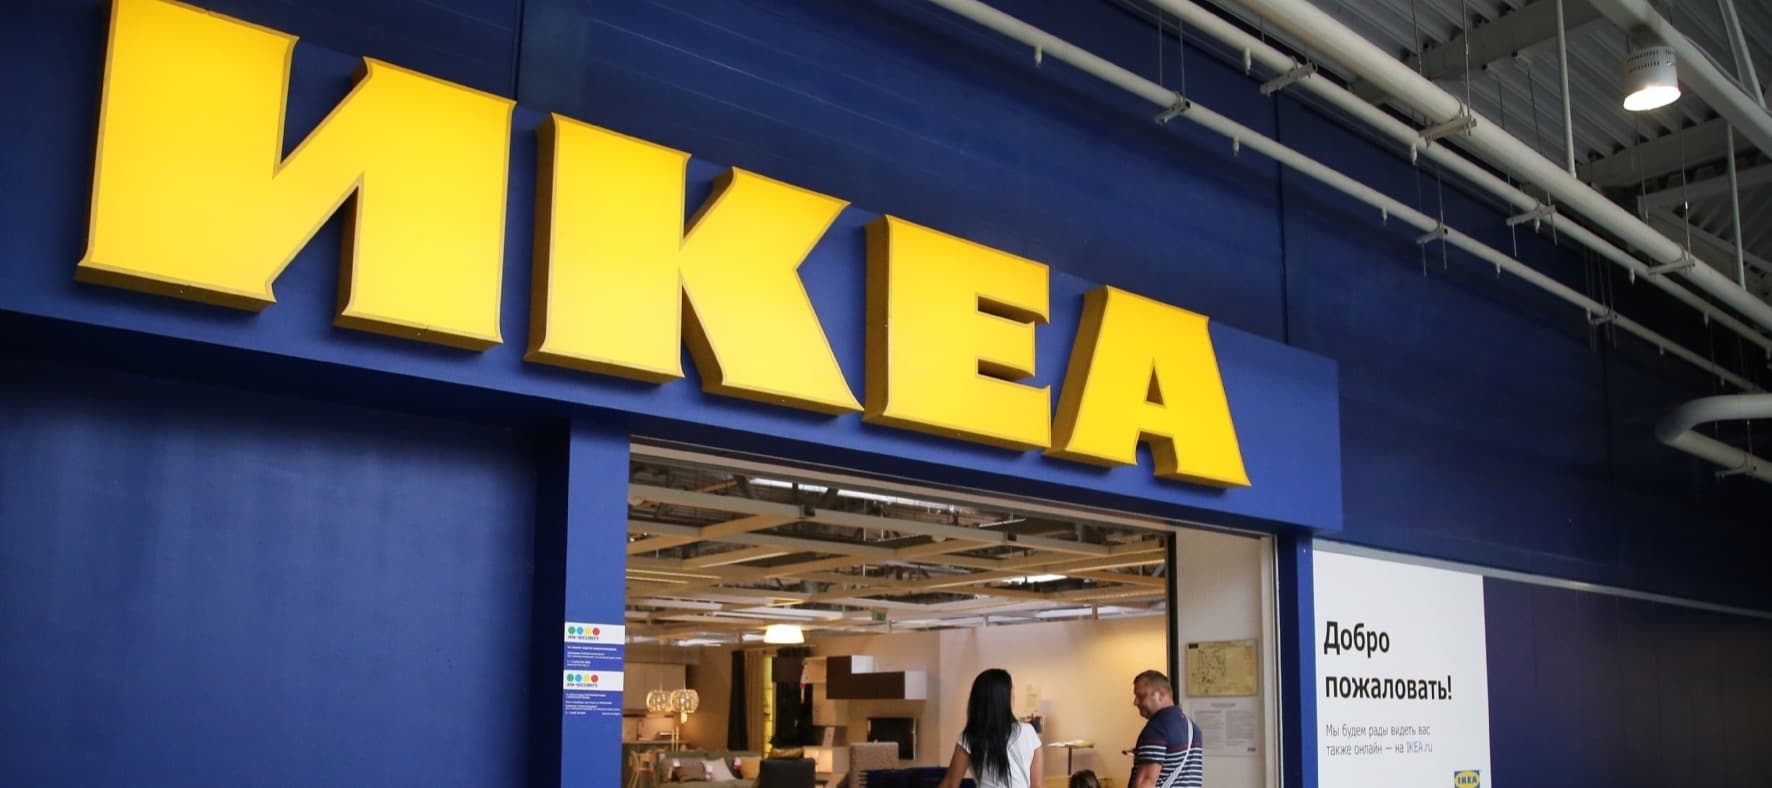 Фото новости: "Ikea приостанавливает работу в России"